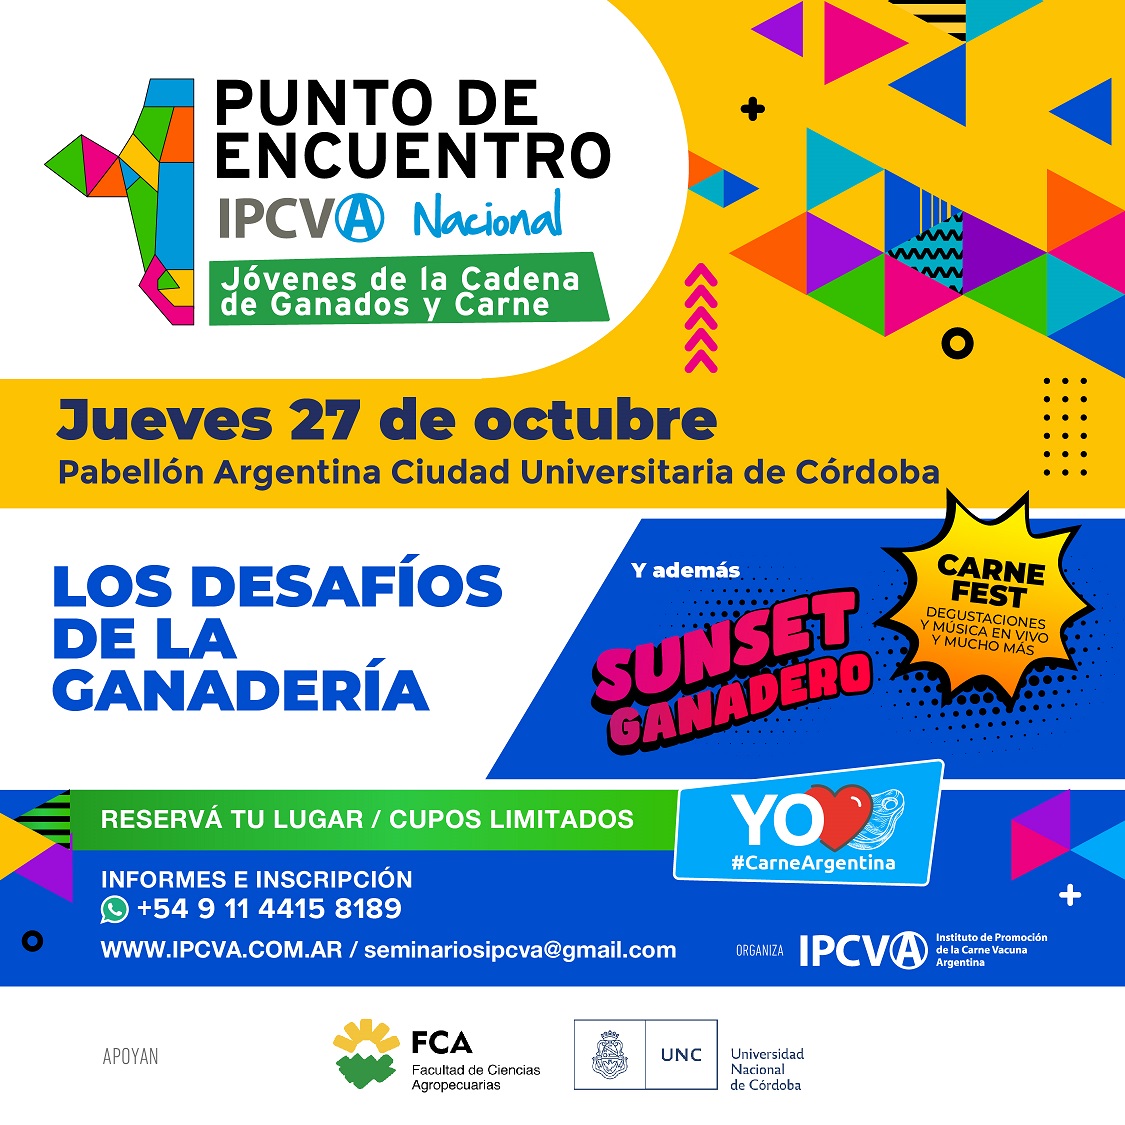 El ciclo “Punto de Encuentro Nacional” del IPCVA para jóvenes cierra el año el 27 de octubre en Córdoba